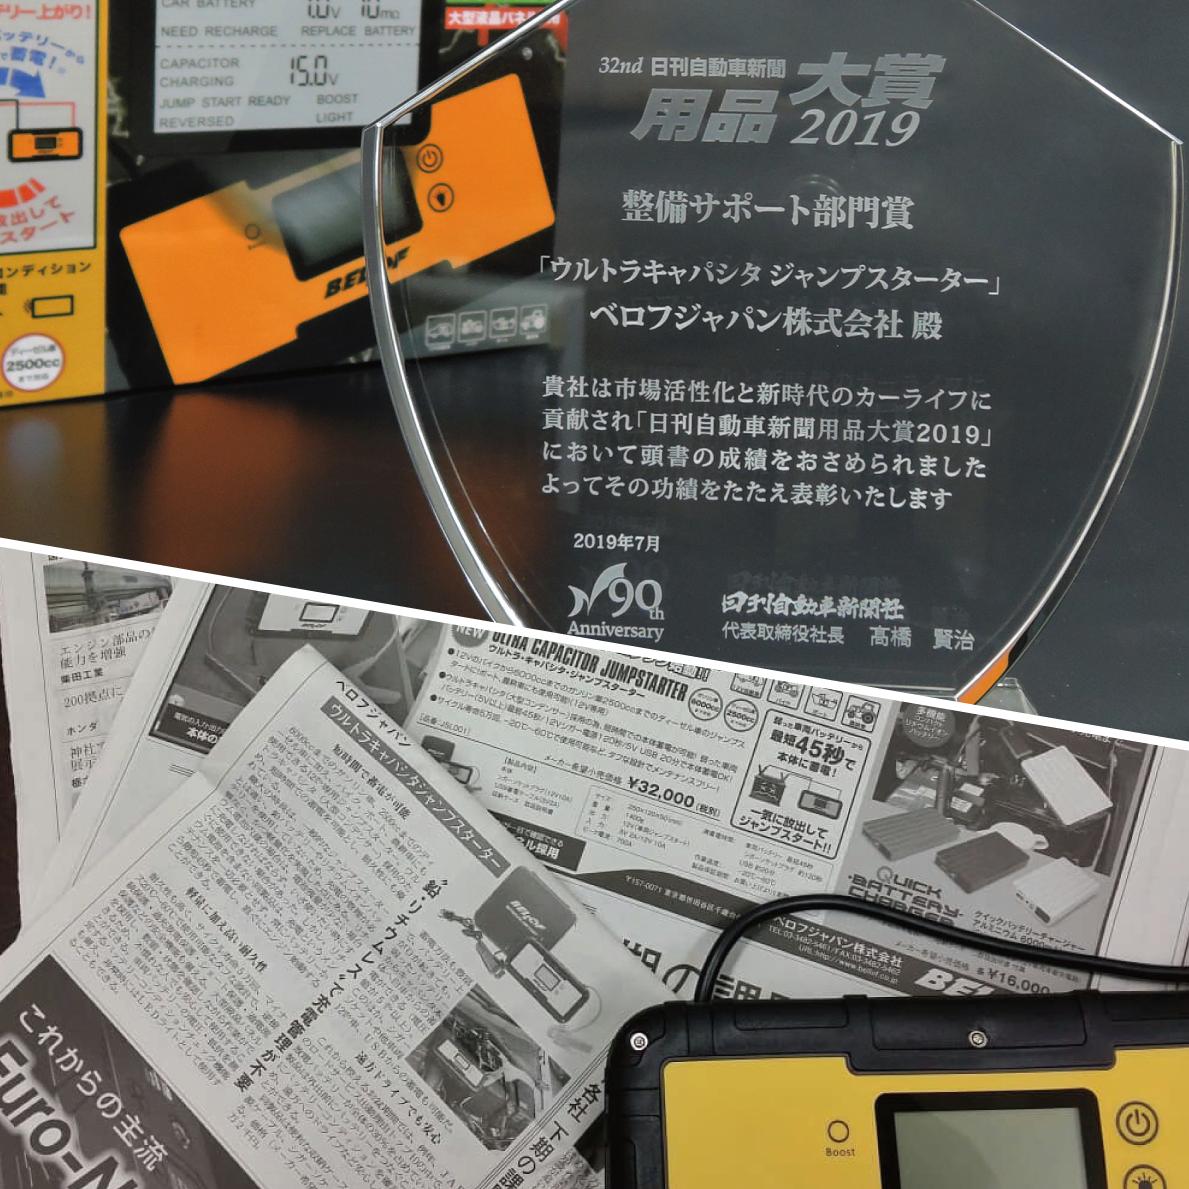 宮地ドットcom-自動車部品・カー用品の専門ショップ- 熊本八代の宮地